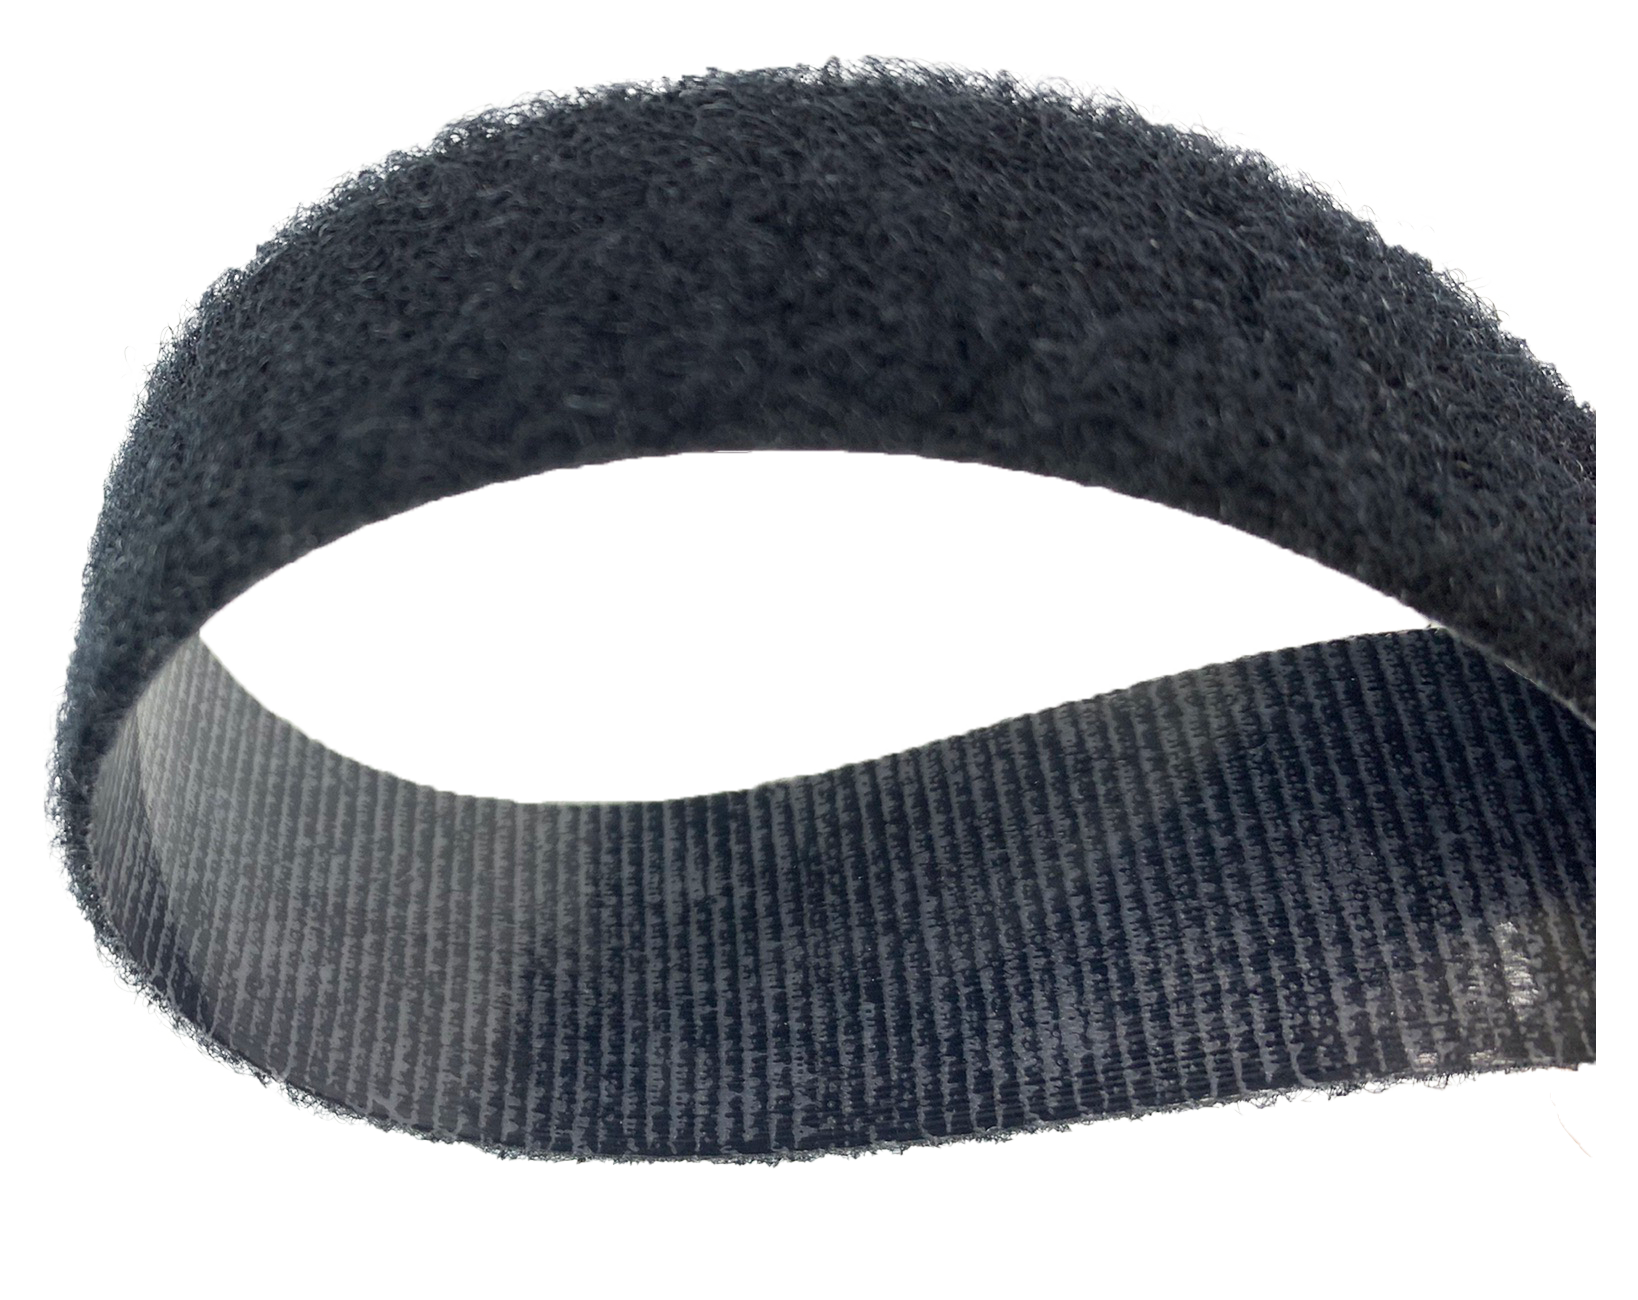 高週波黏扣帶係於黏扣帶背面塗佈一層高週波膠或是黏貼一層熱熔膠膜，使其透過焊接或熱壓後產生固定的能力。